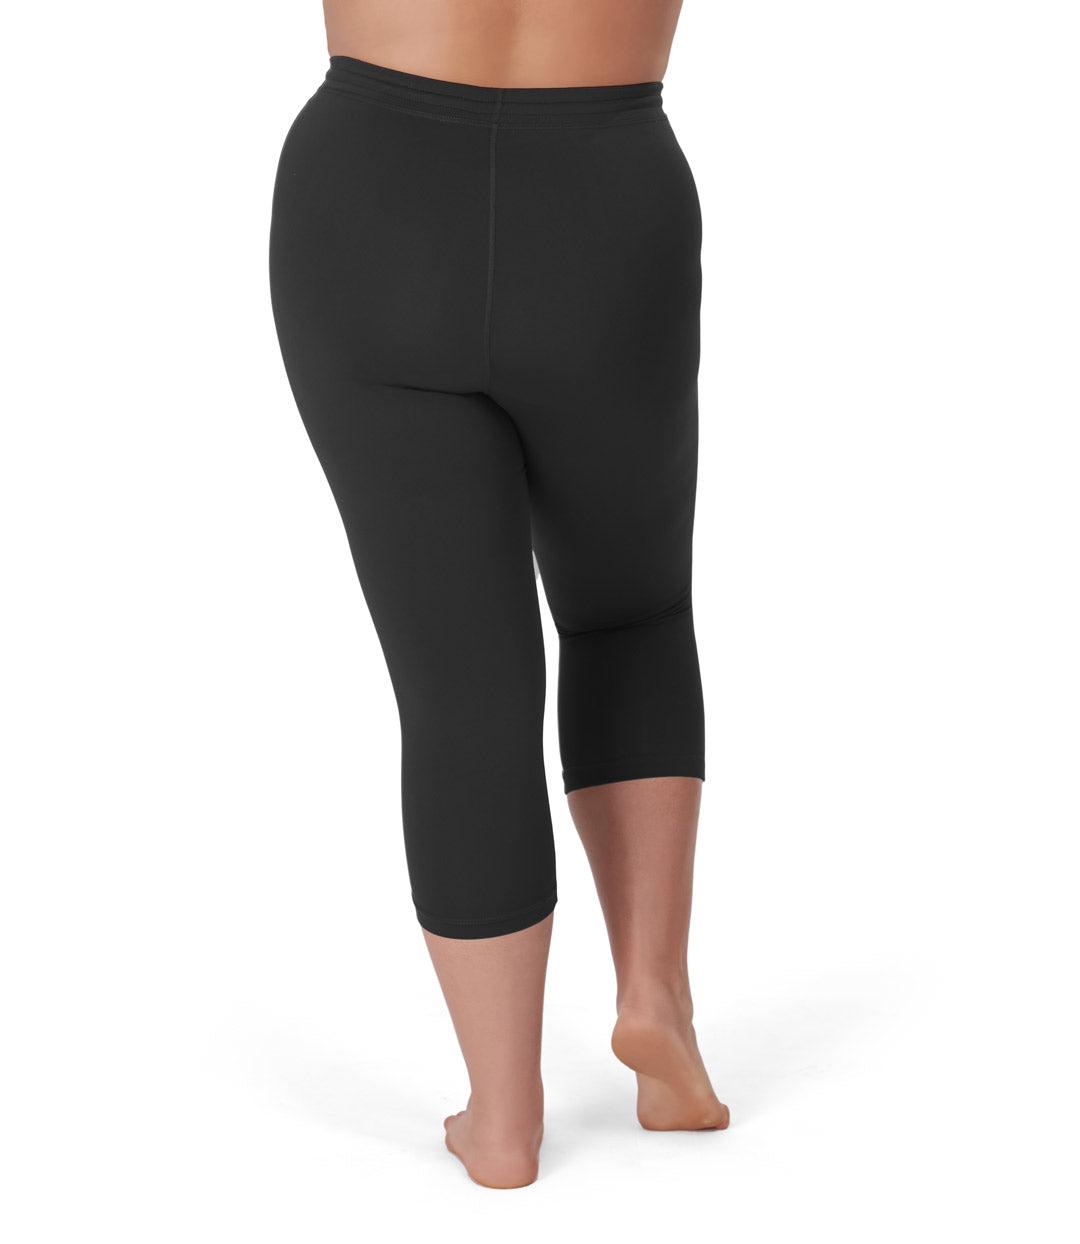 Women's Capri Calf Length Color Leggings-Black